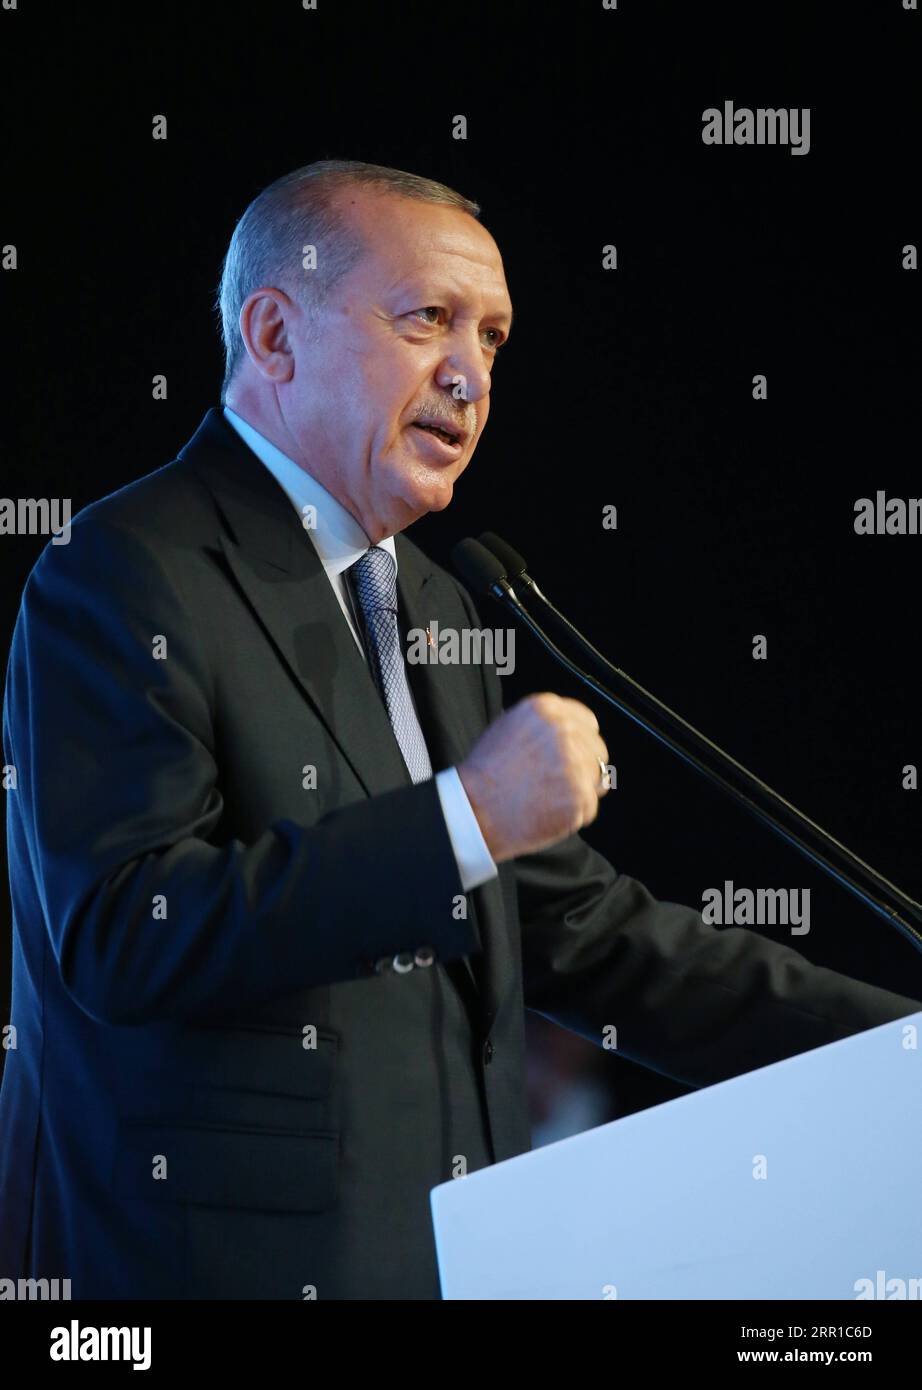 200912 -- ISTANBUL, 12 settembre 2020 -- il presidente turco Recep Tayyip Erdogan parla ad un simposio a Istanbul, in Turchia, il 12 settembre 2020. Erdogan sabato ha avvertito la controparte francese Emmanuel Macron sull'opposizione di quest'ultima alle attività marittime turche nel Mediterraneo orientale. TURCHIA-ISTANBUL-PRESIDENTE-E.. MED DISPUTE Xinhua PUBLICATIONxNOTxINxCHN Foto Stock